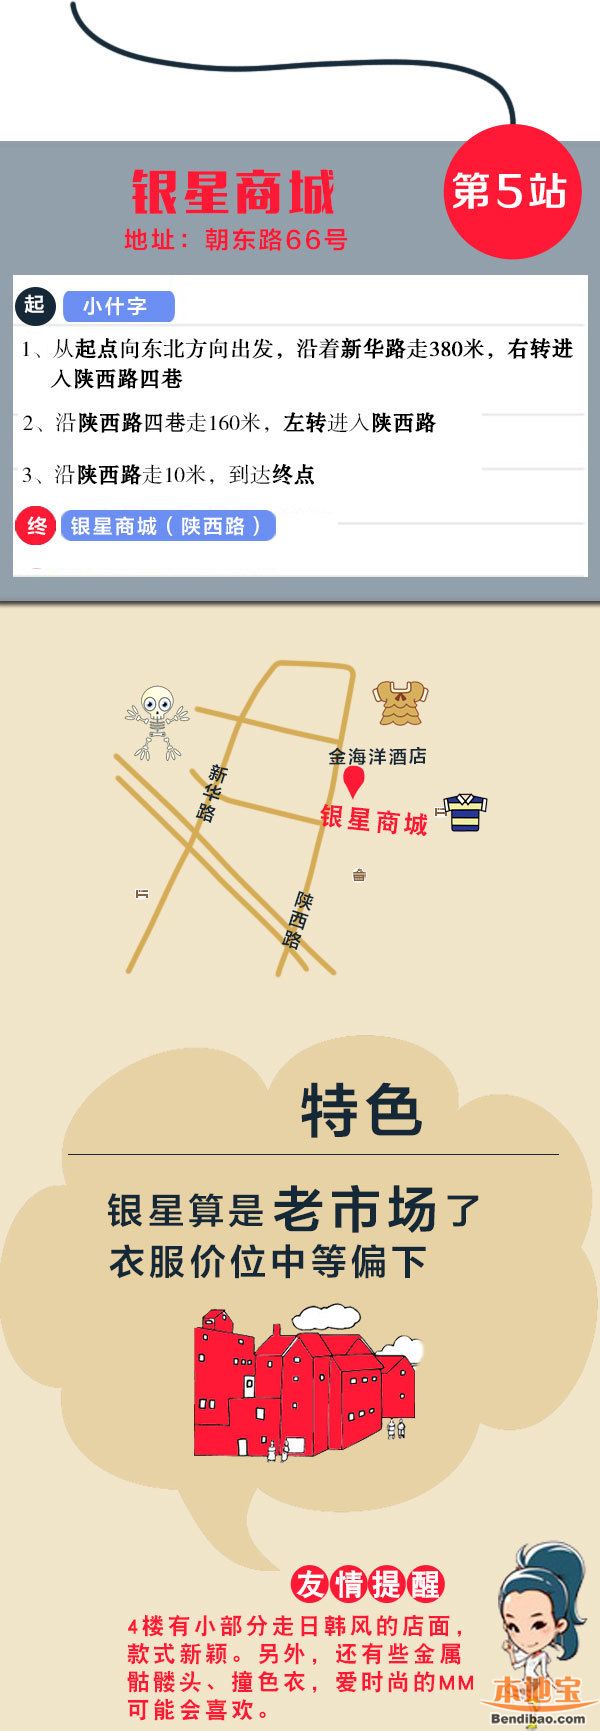 重庆市内十大必去旅游景点游玩攻略